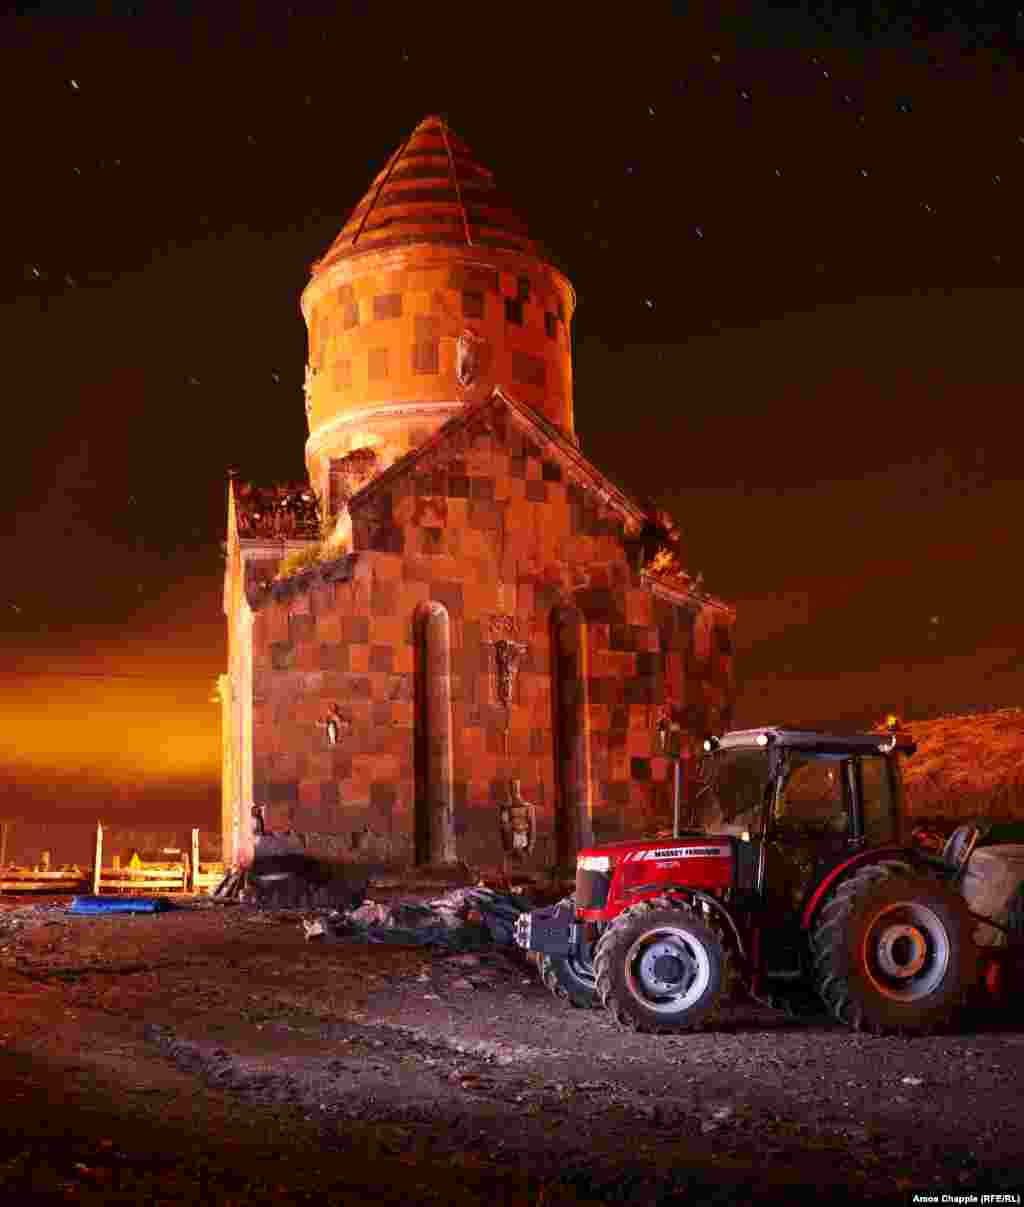 Красная церковь (Kizil Kilise) в деревне Ягкесен в нескольких километрах от Ани. Ягкесен был армянским поселением вплоть до 1920 года, когда большинство его жителей, опасаясь погромов и резни, все-таки уехали в Советскую Армению